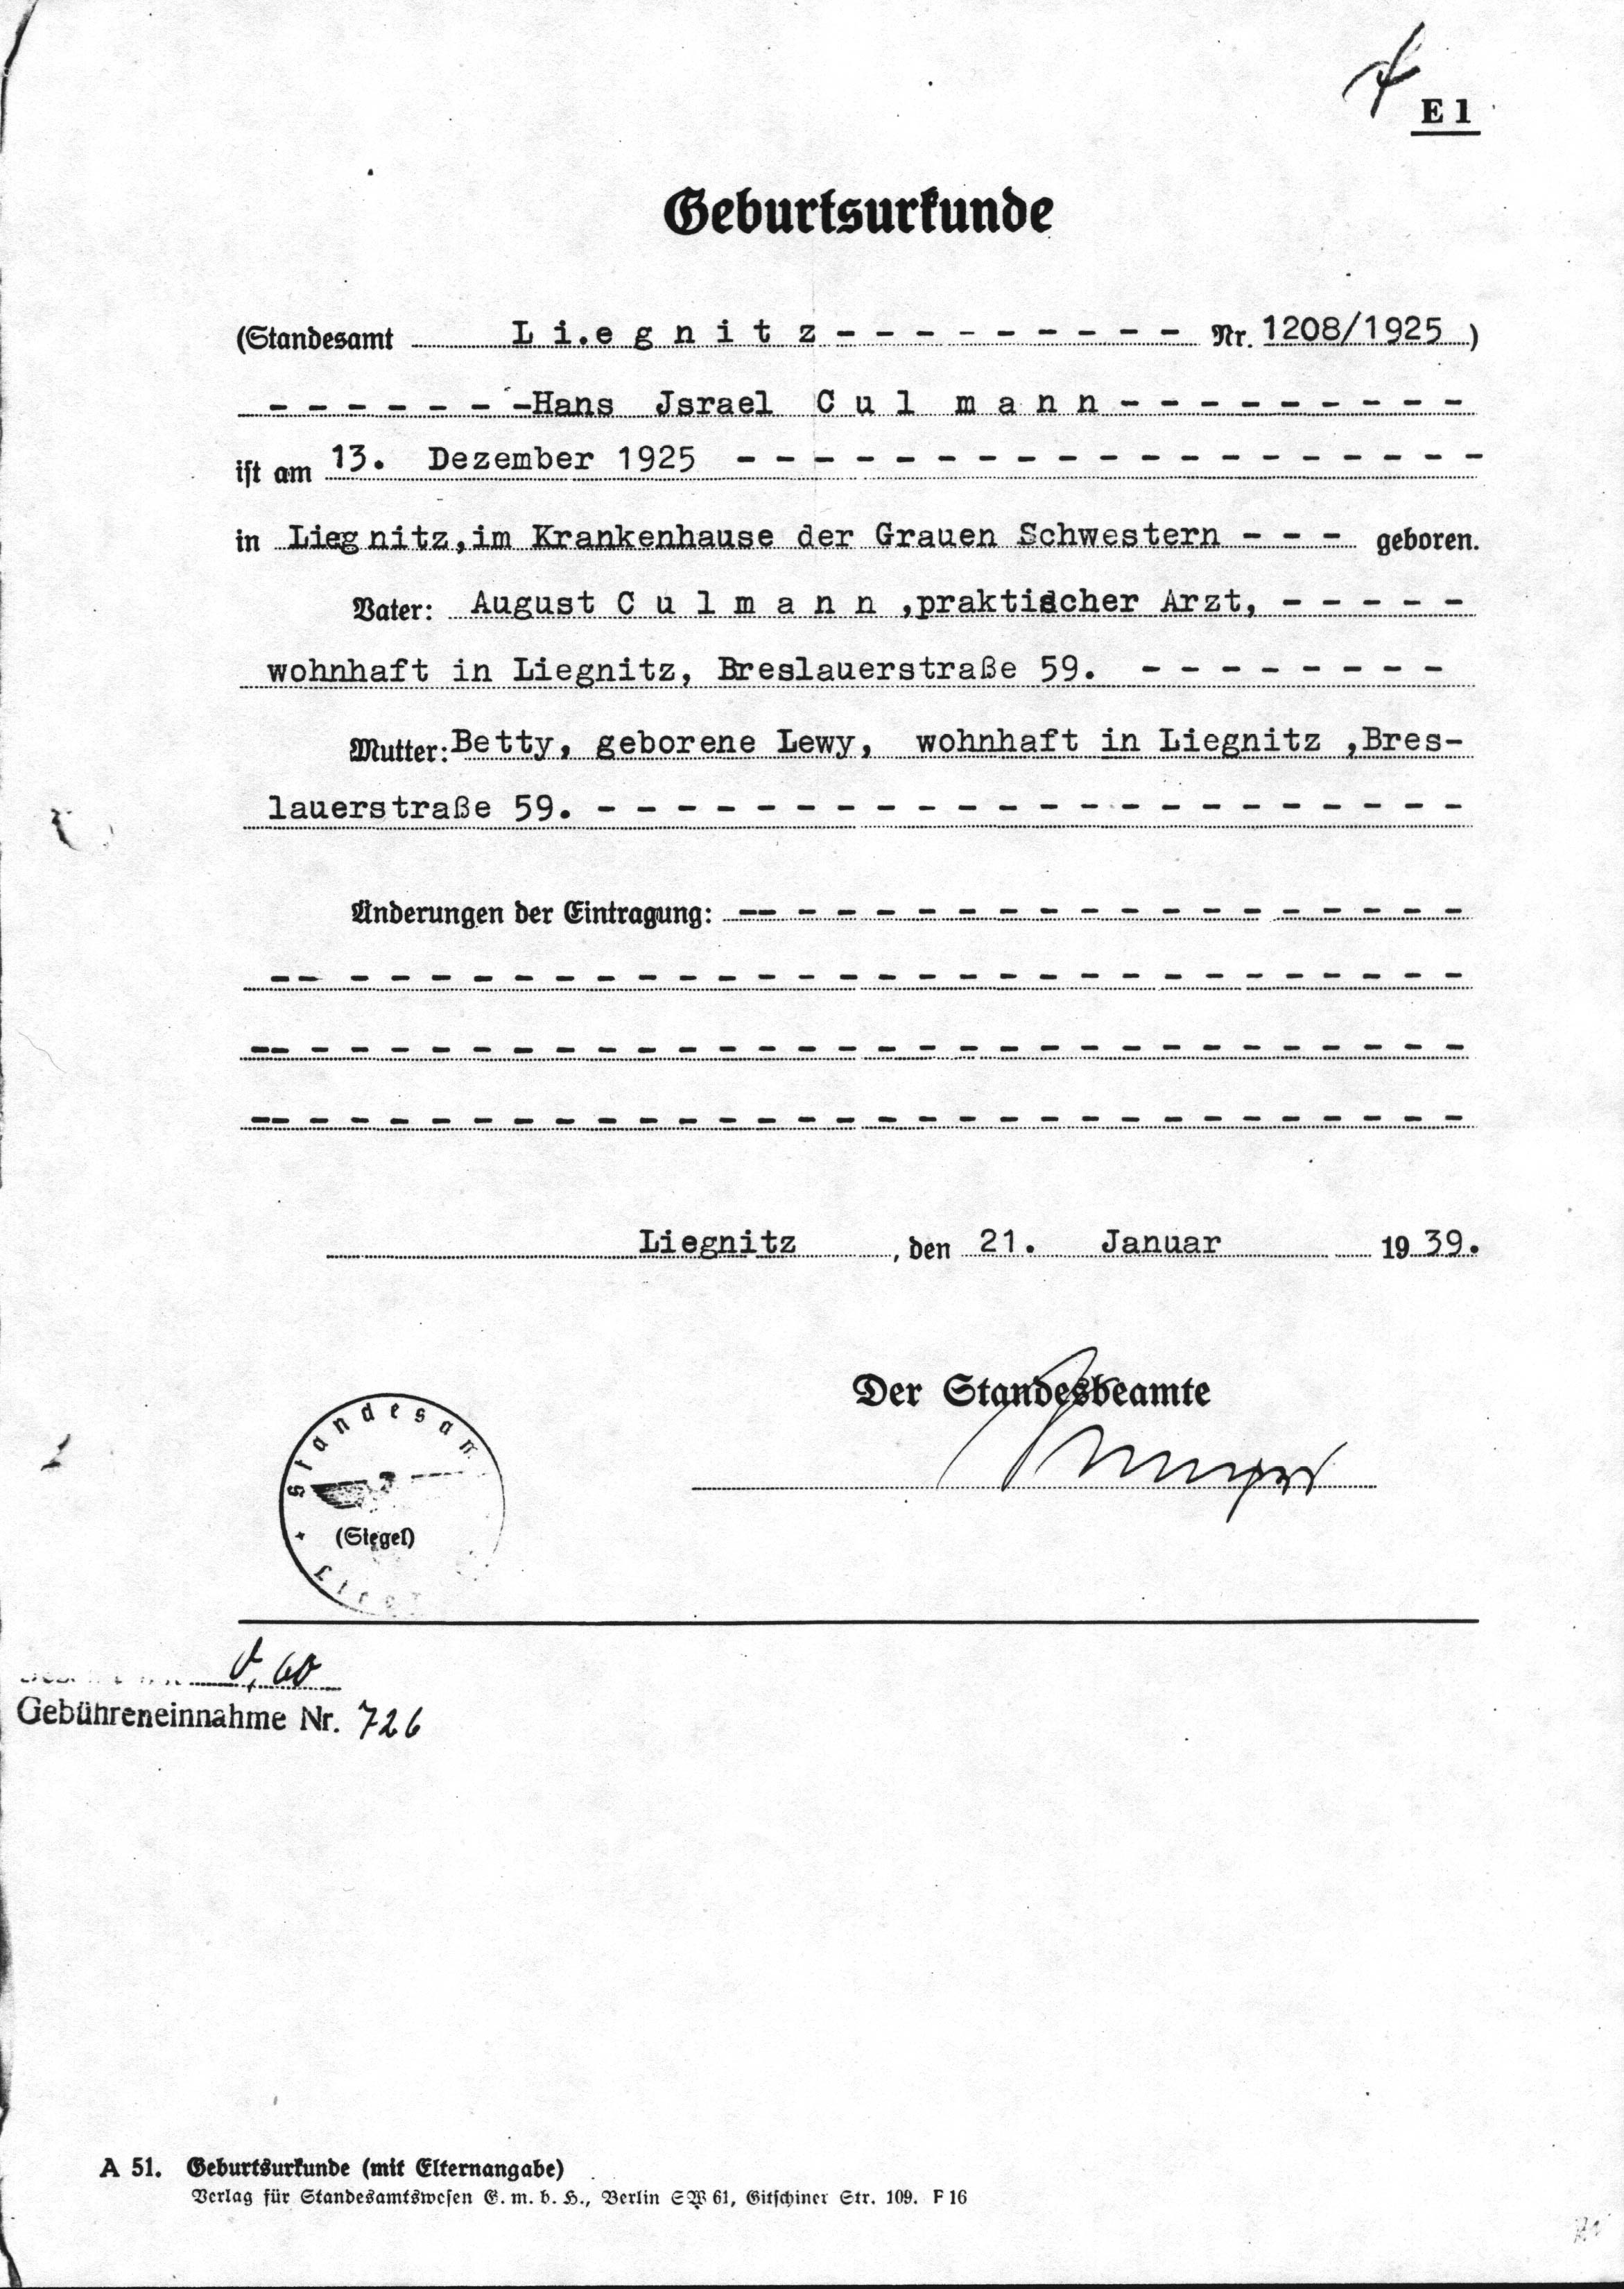 Birth Certificate (Certified copy, 1938)